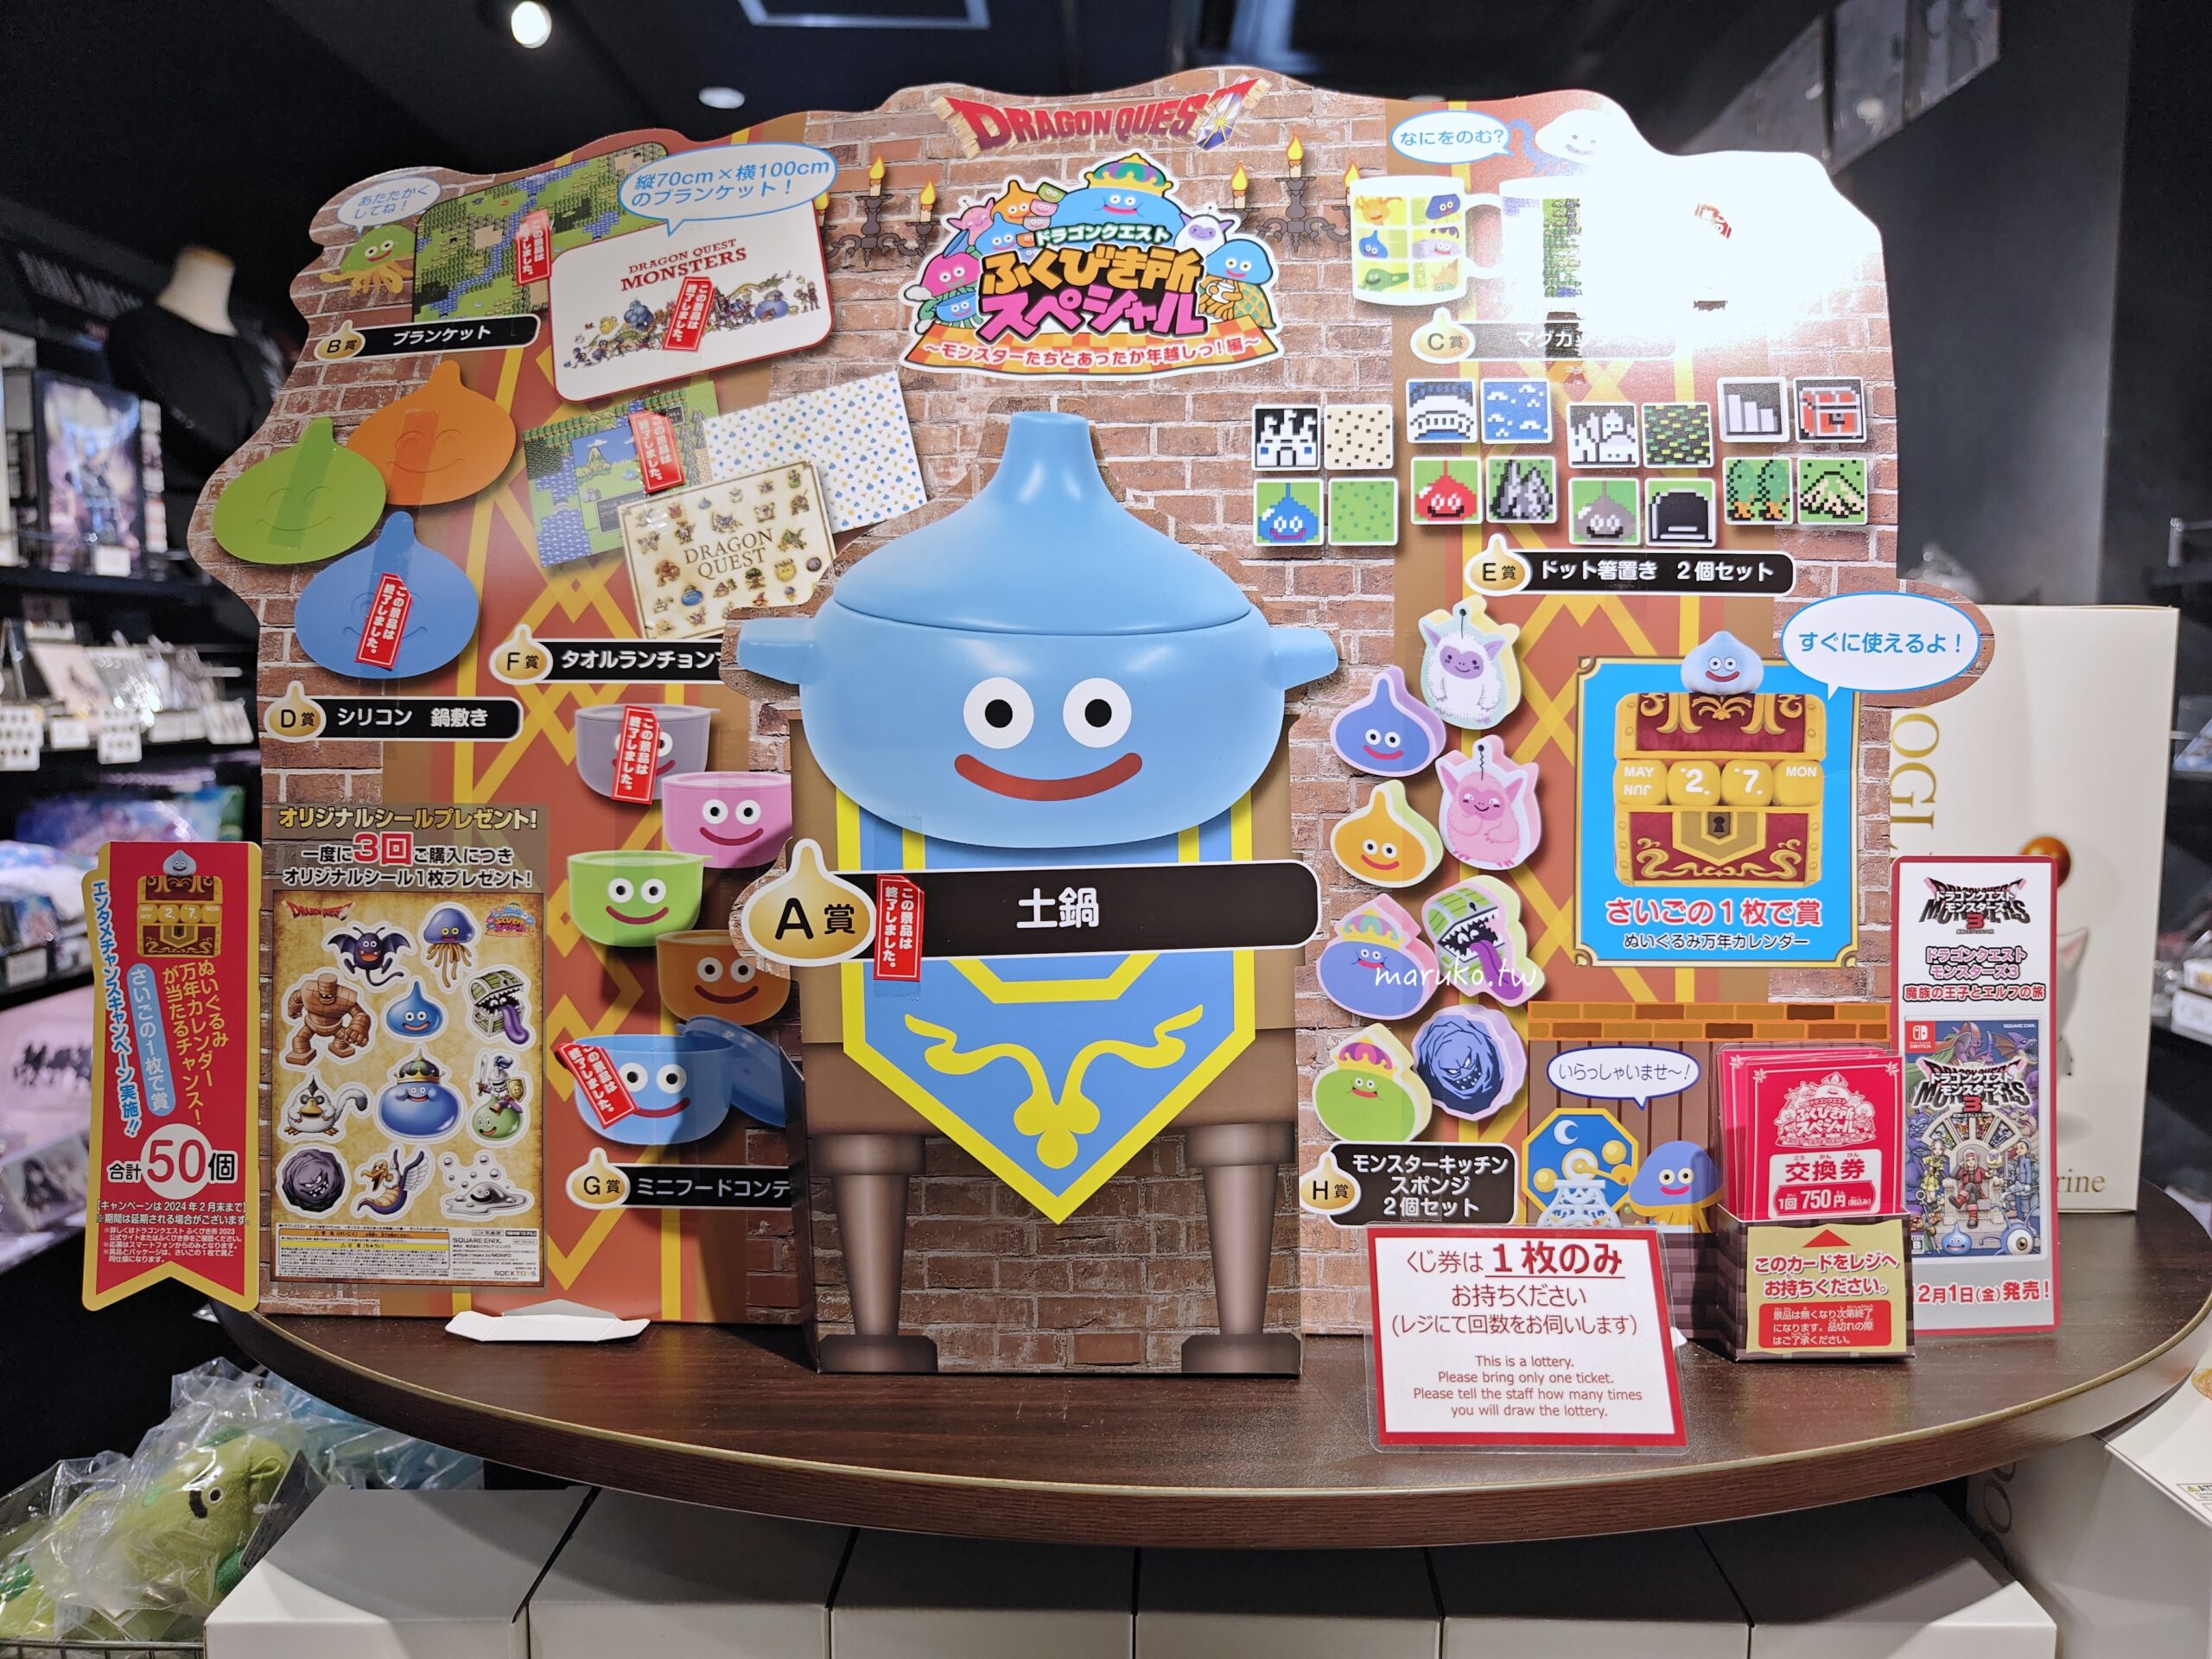 【東京購物】Square Enix Cafe 勇者鬥惡龍史萊姆主題餐廳、週邊商品一次看，動漫迷的天堂秋葉原！ @Maruko與美食有個約會